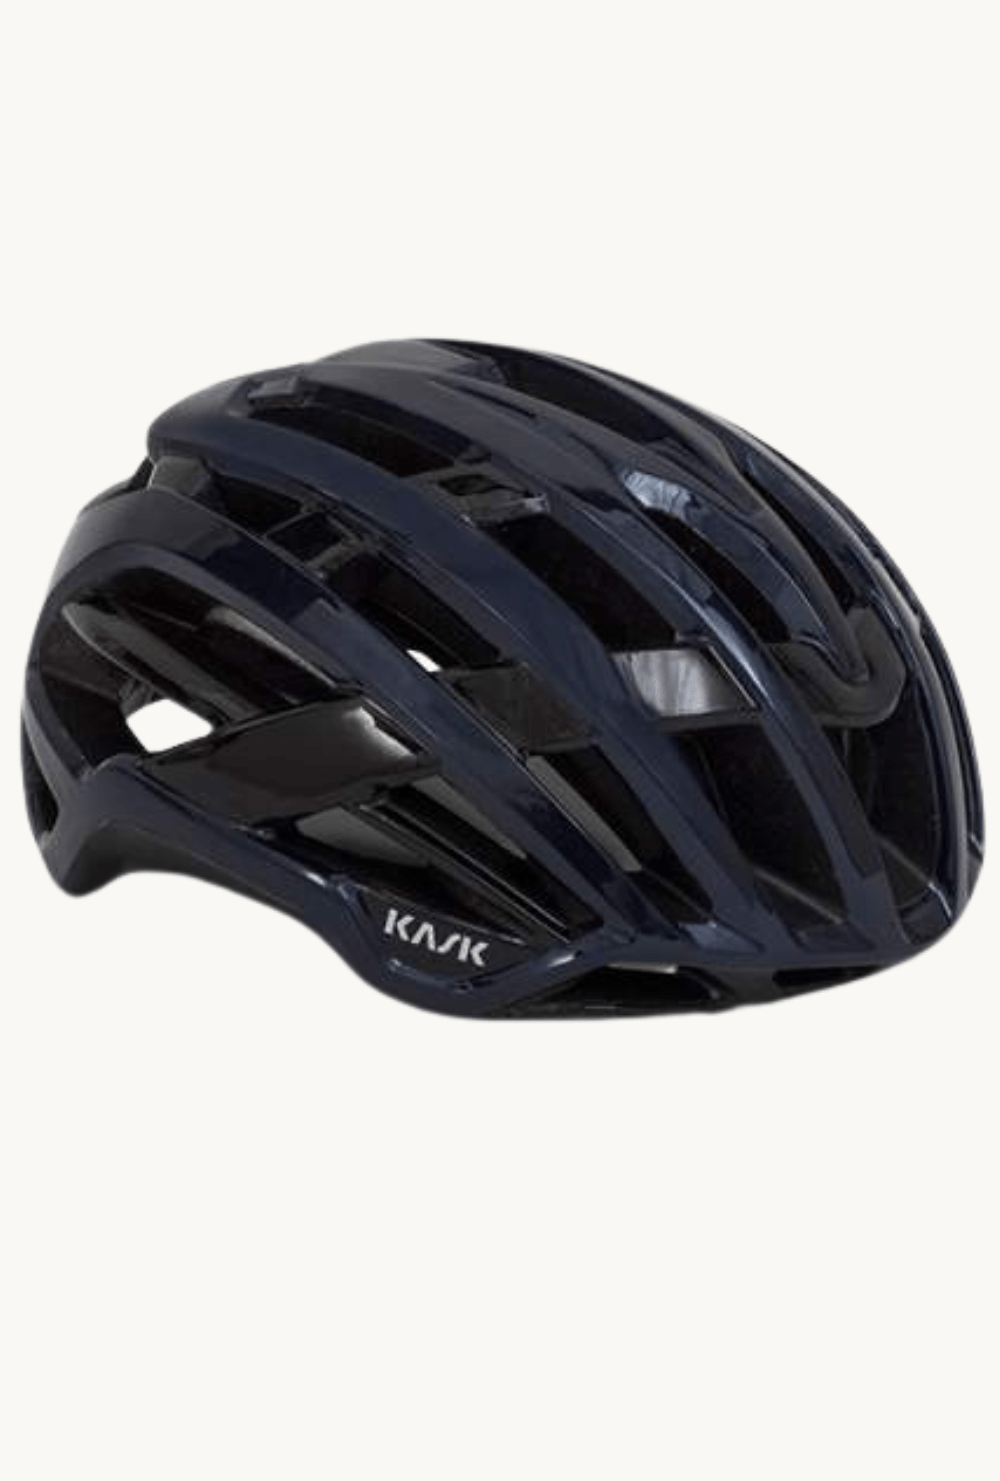 Helmet - Kask Valegro Navysmall / Navy